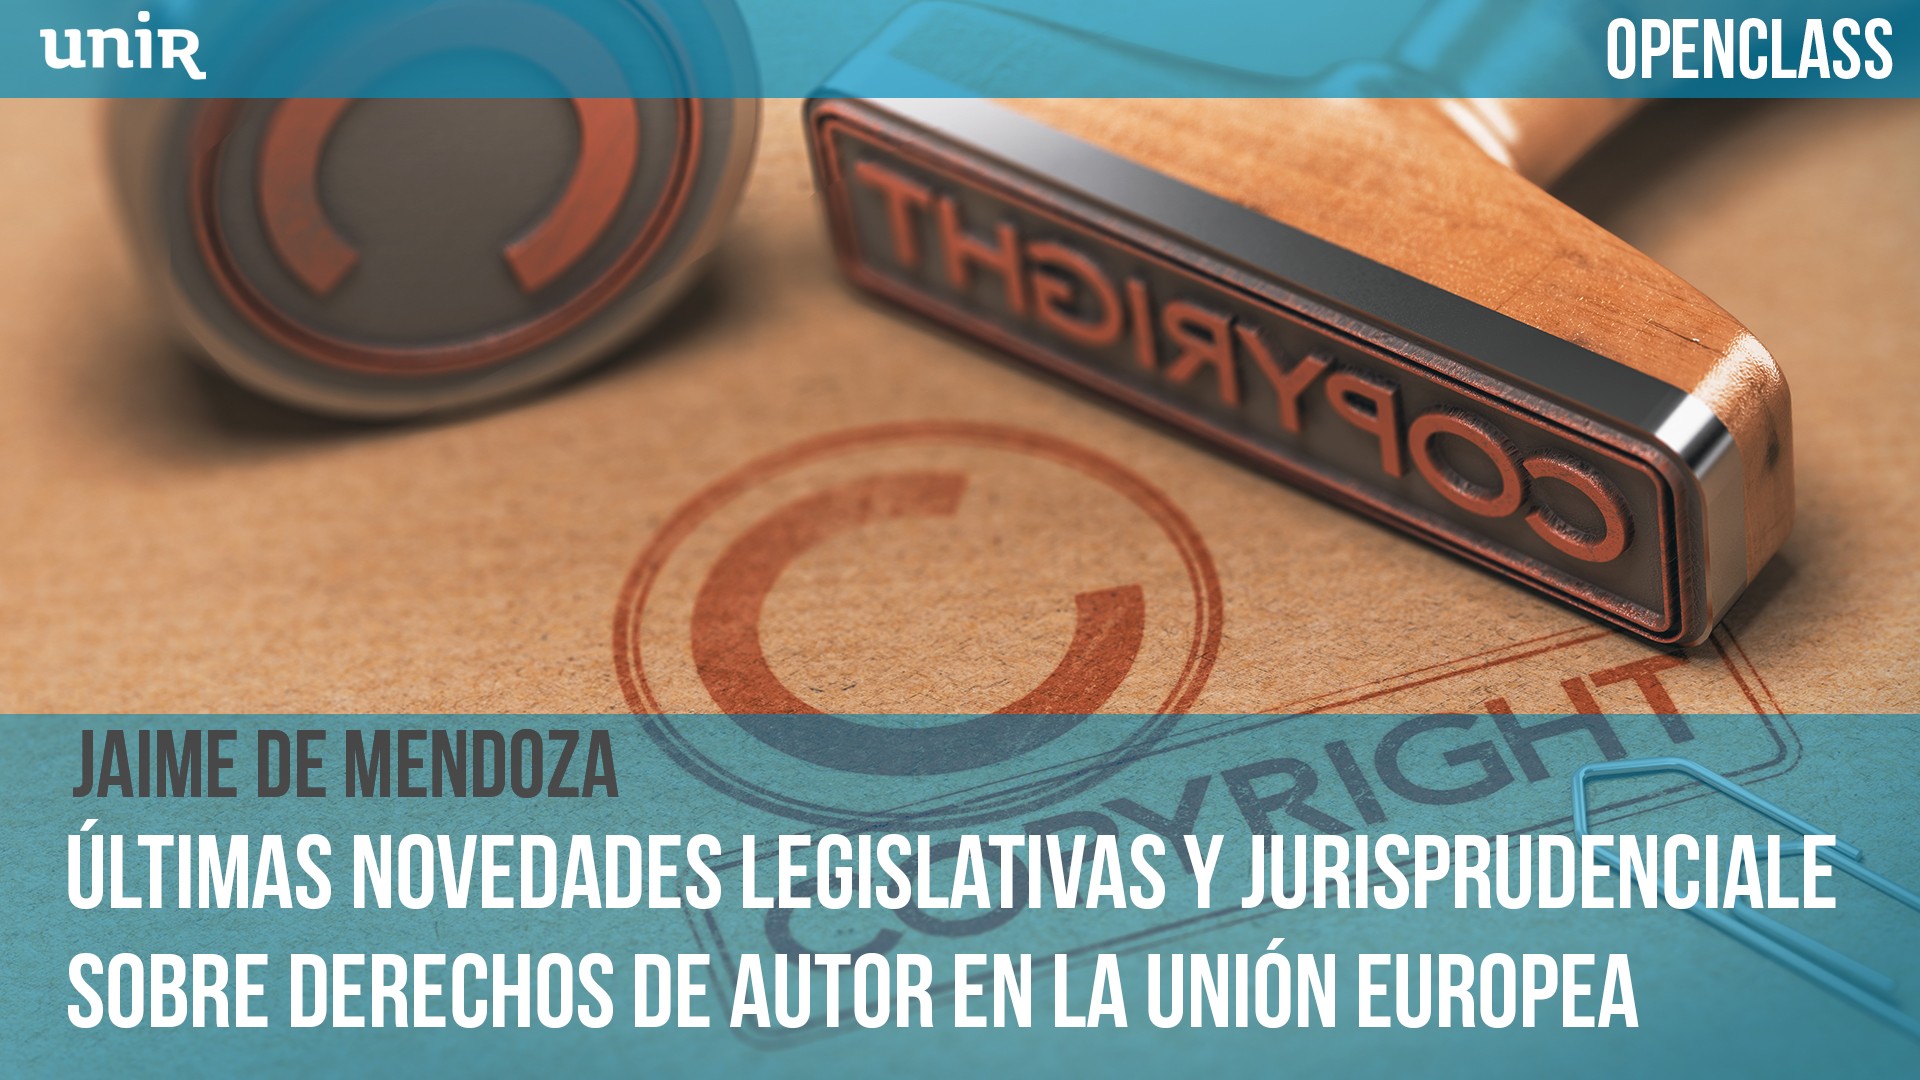 Últimas novedades legislativas y jurisprudenciales sobre derechos de autor en la Unión Europea